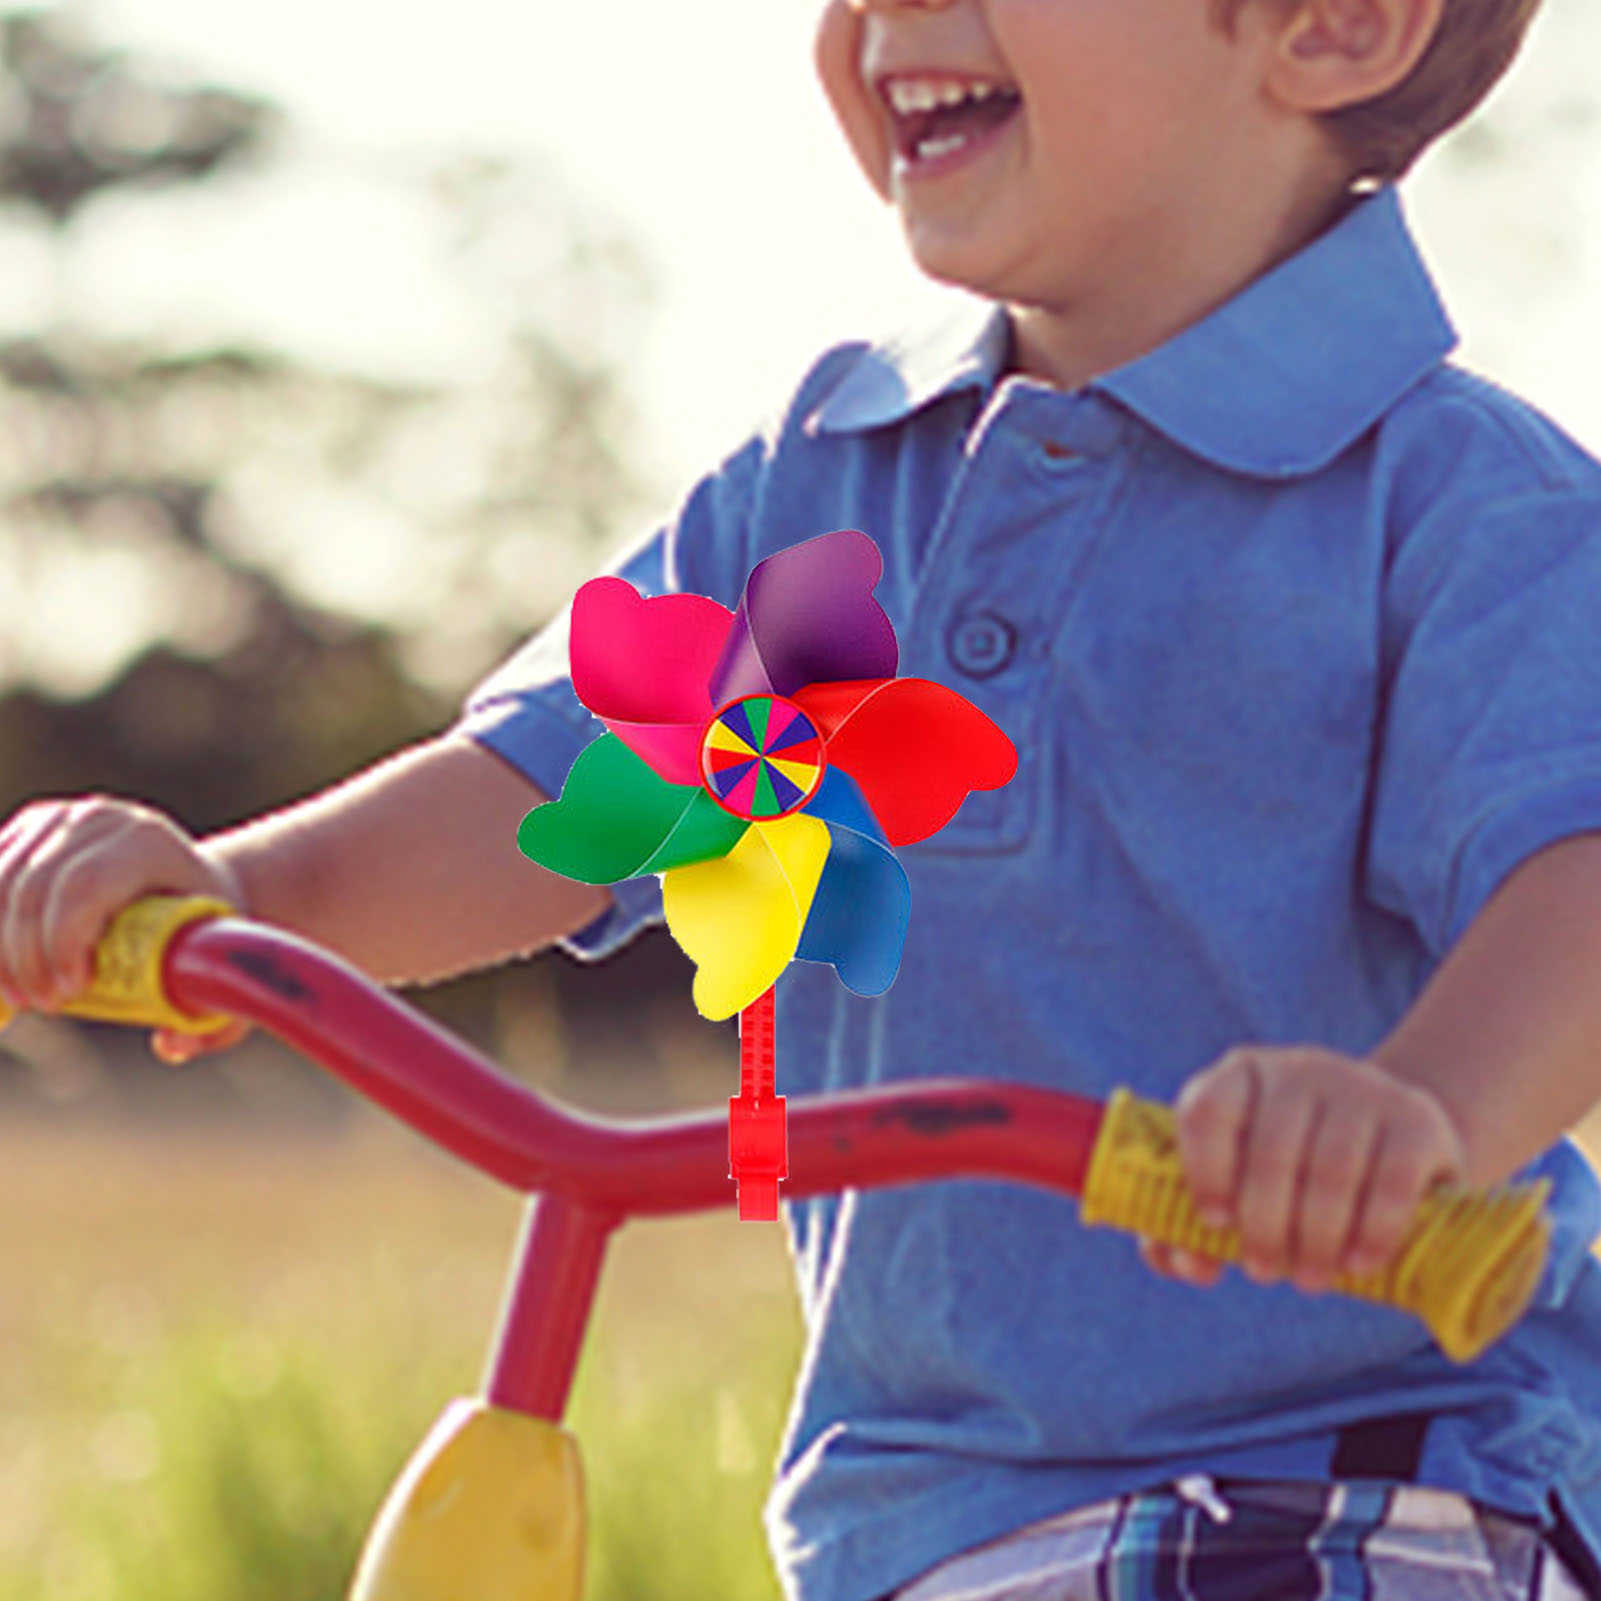 Neue Nette Kinder Fahrrad Lenker Blume Windrad Windmühle Dekoration Für Kinder Fahrrad Roller Radfahren Zubehör